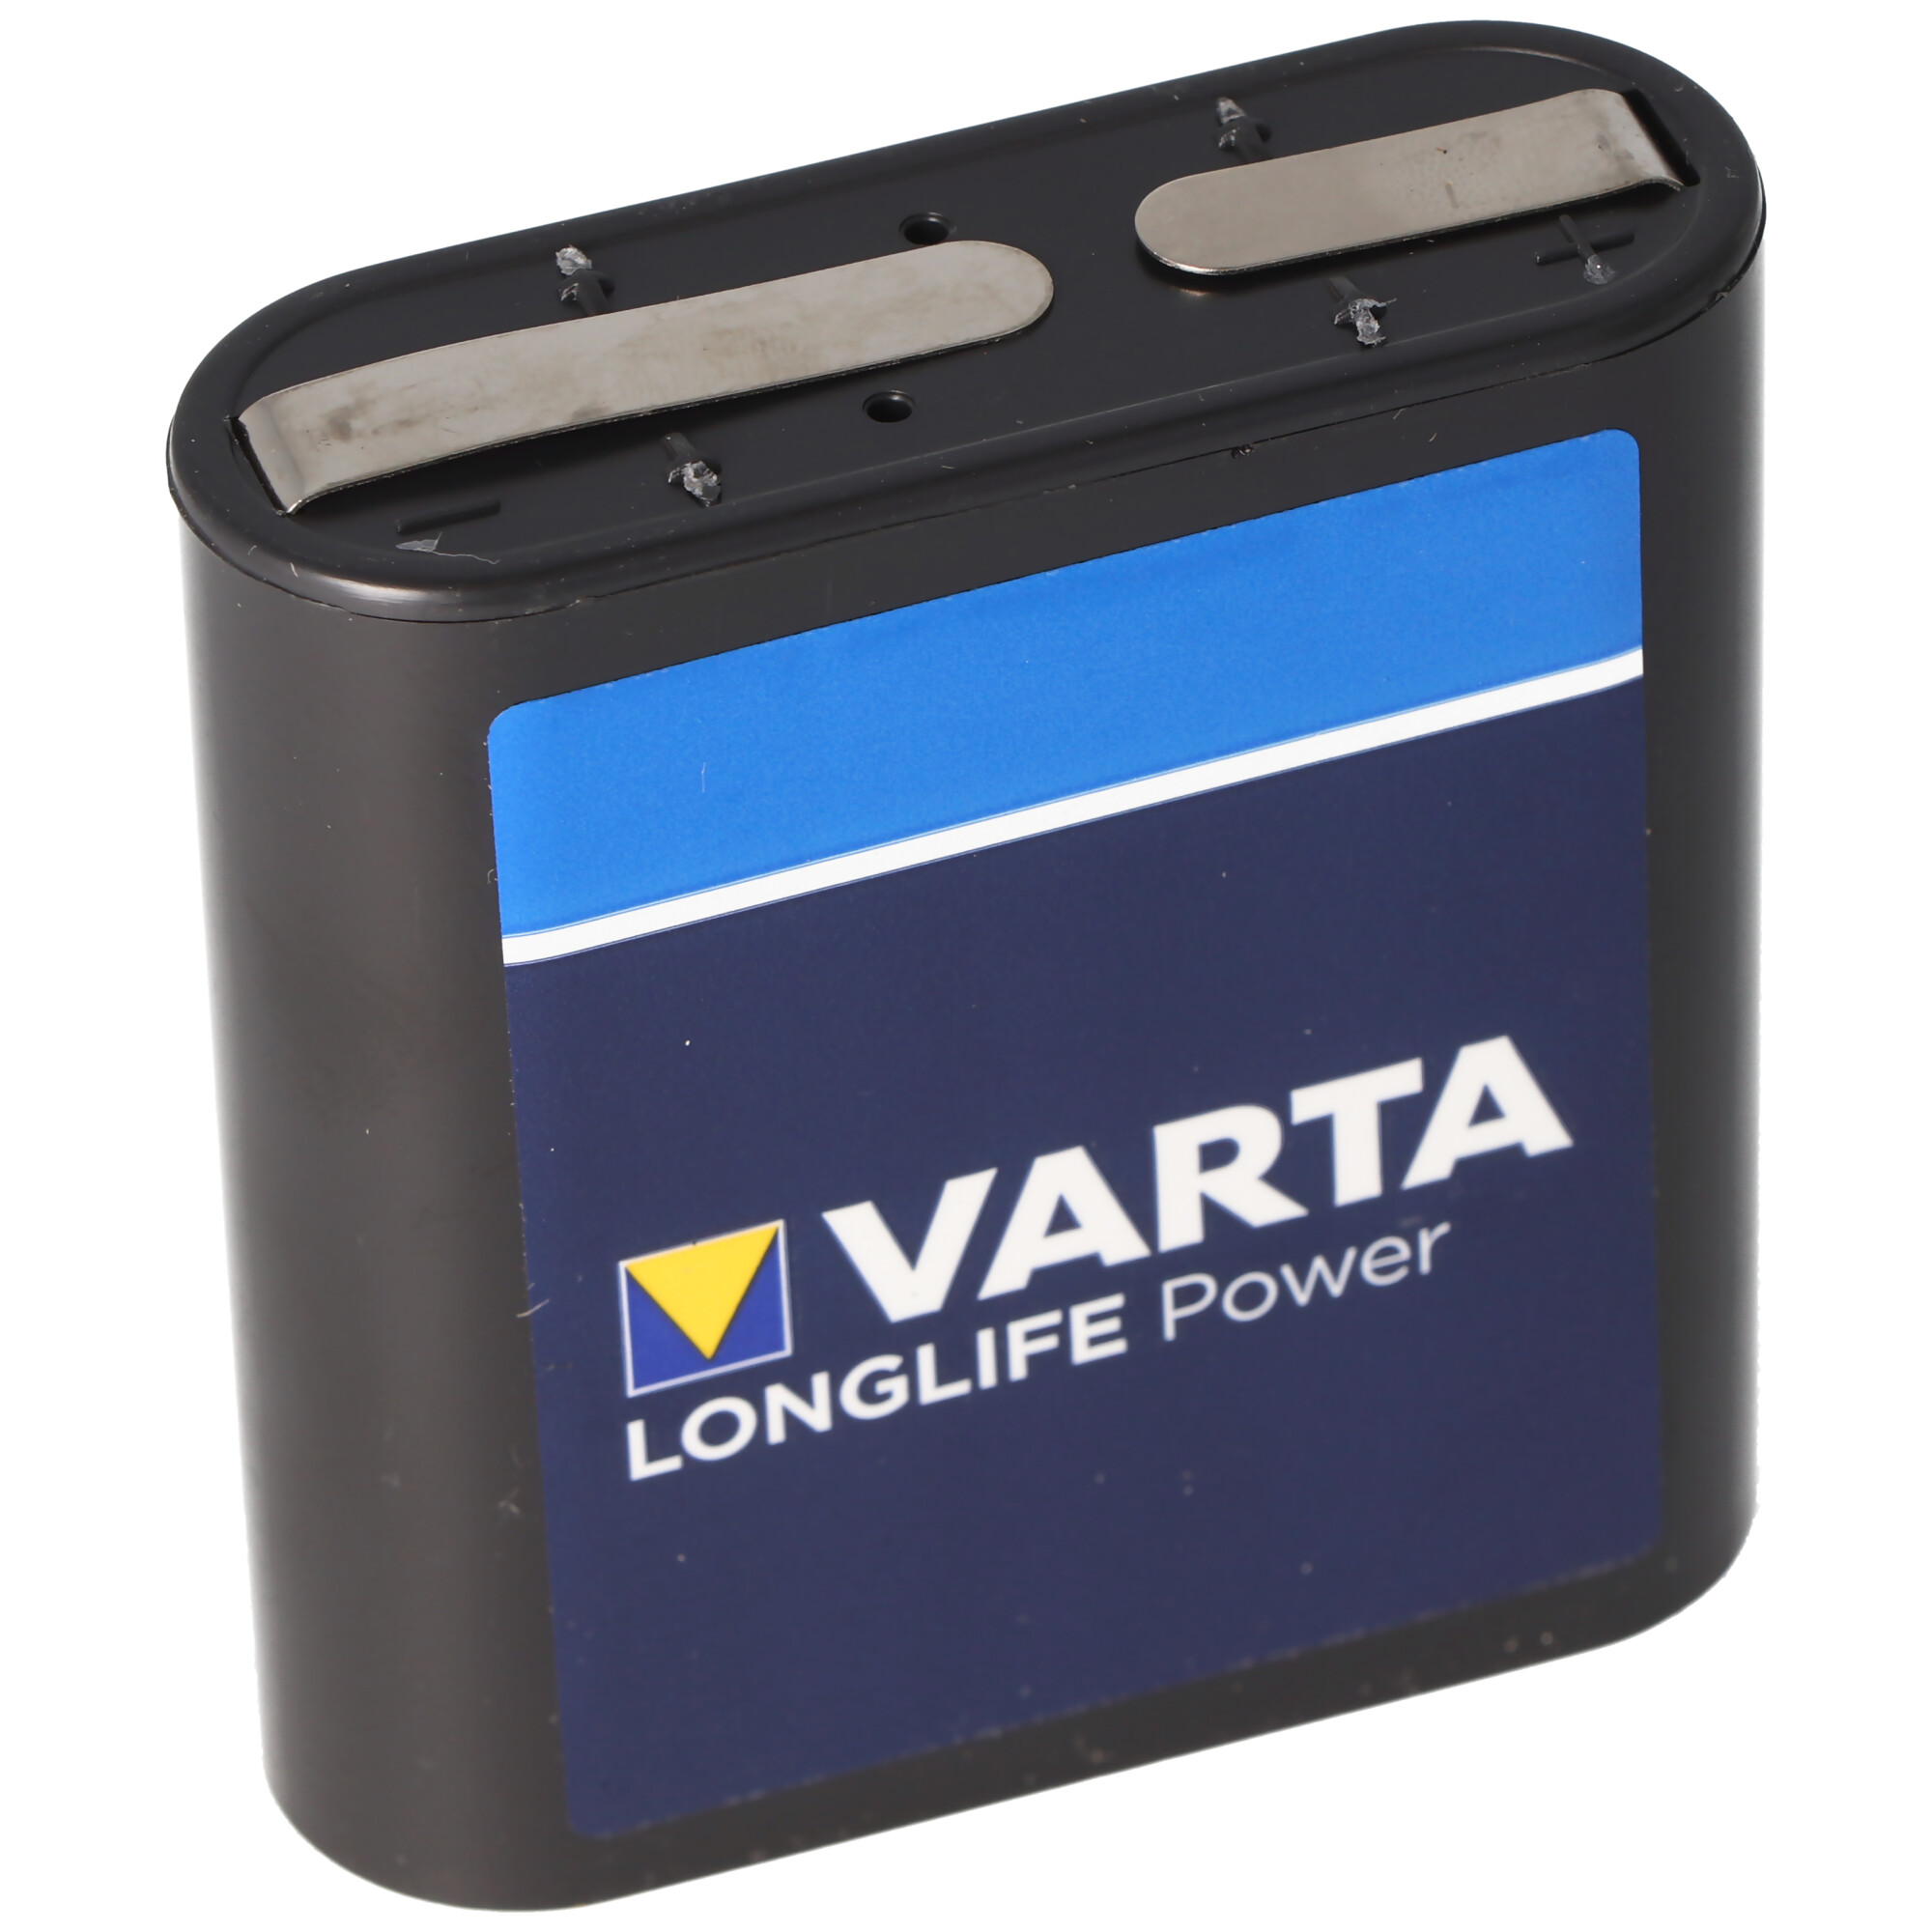 Varta High Energy 4.5V, batterie plate MN1203, 3LR12, 3LR12P, 4.5V 3R12  plat, Piles standard, Piles